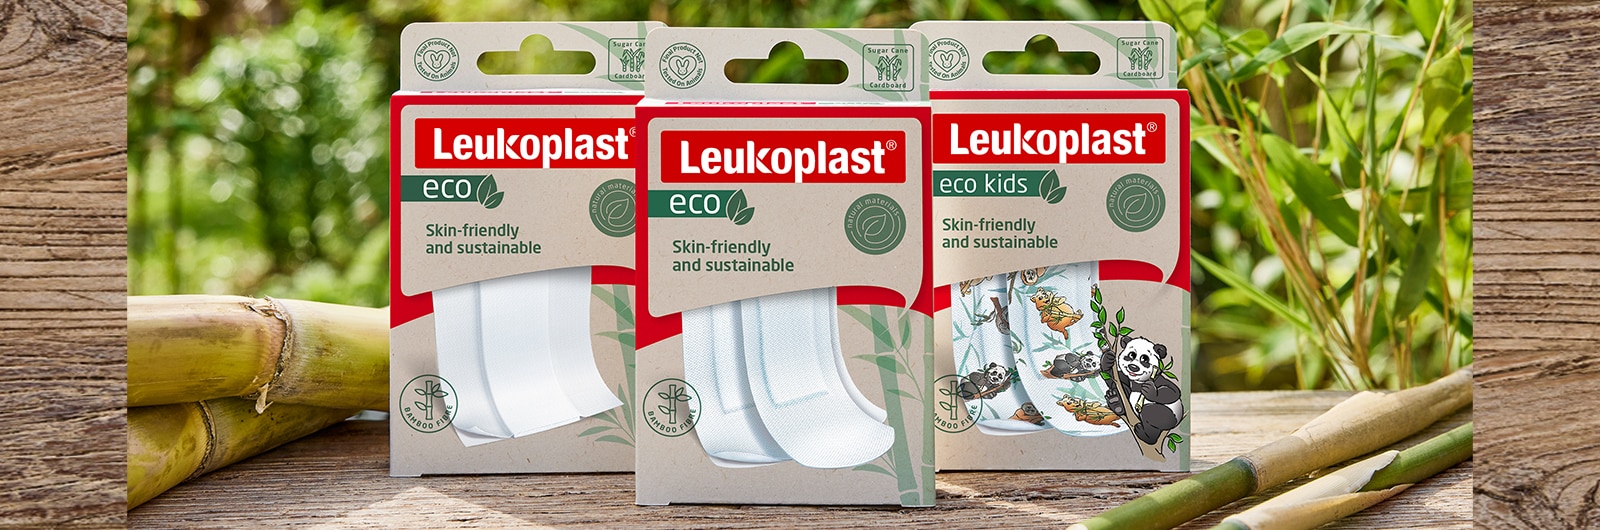 Afbeelding met de Leukoplast eco verpakkingen met verbanden in verschillende lengtes, strips en de versie voor kinderen